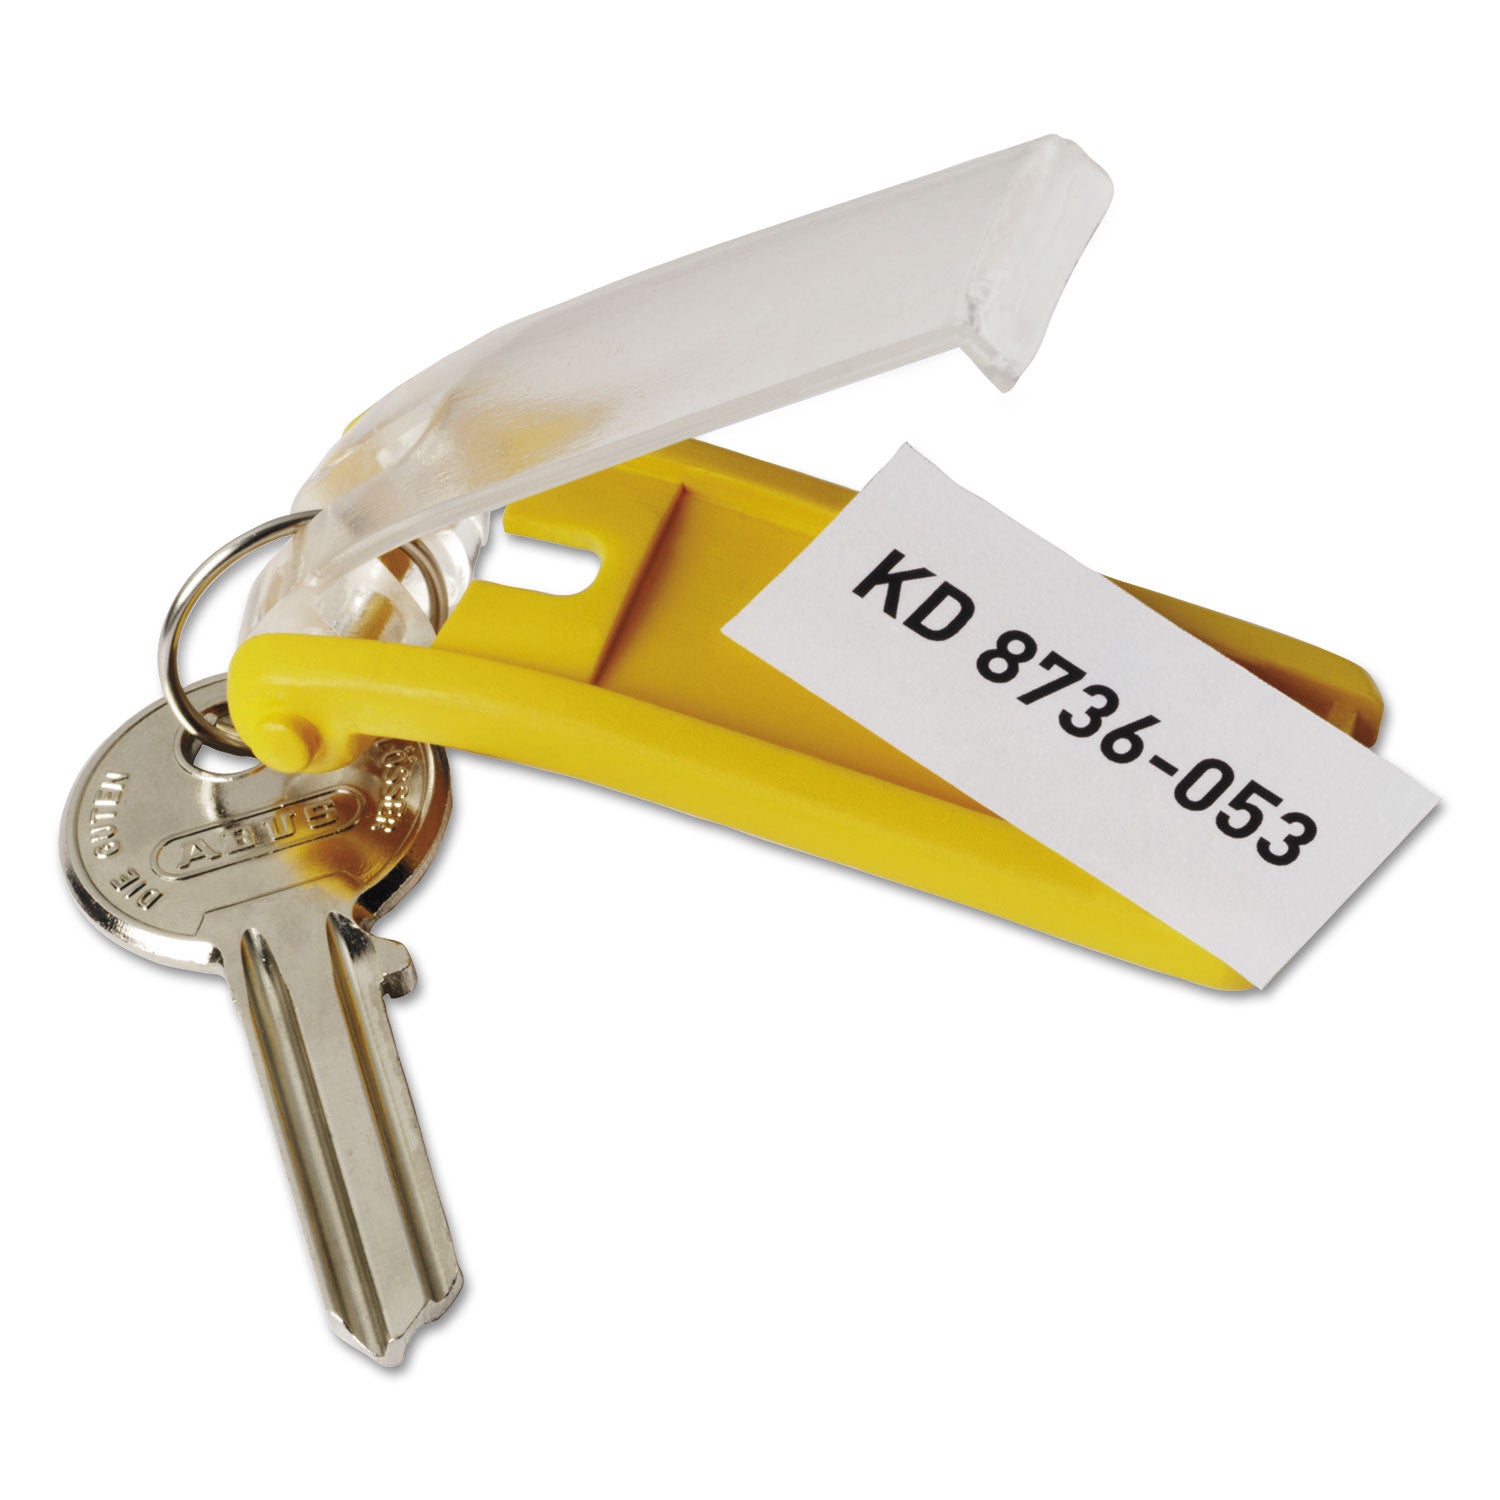 Locking Key Cabinet, 36-Key, Brushed Aluminum, Silver, 11.75 x 4.63 x 11 - 